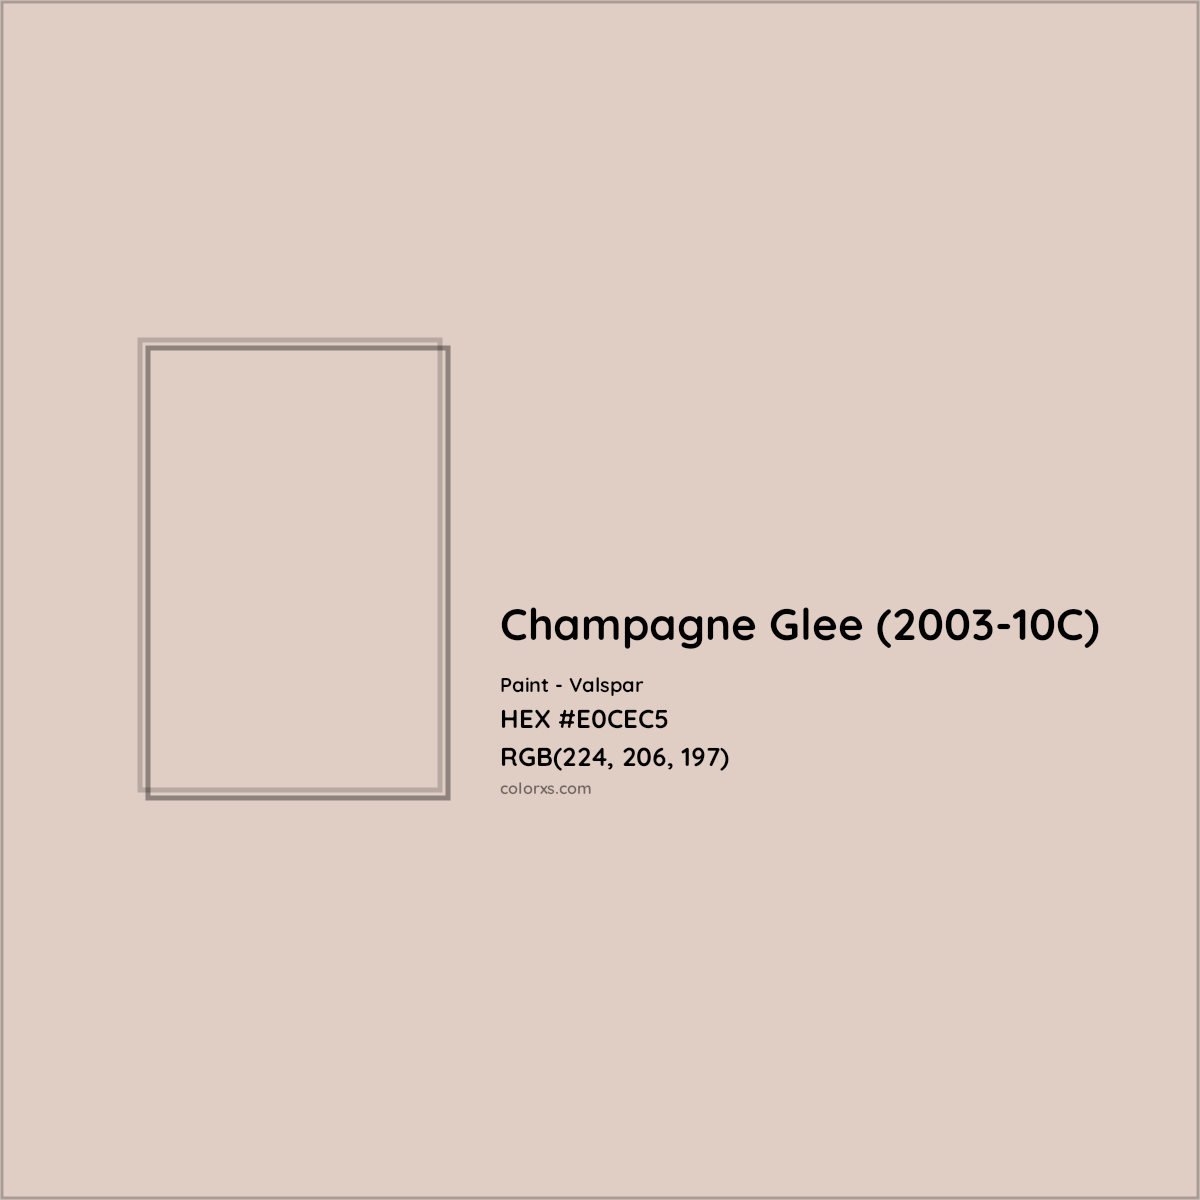 HEX #E0CEC5 Champagne Glee (2003-10C) Paint Valspar - Color Code